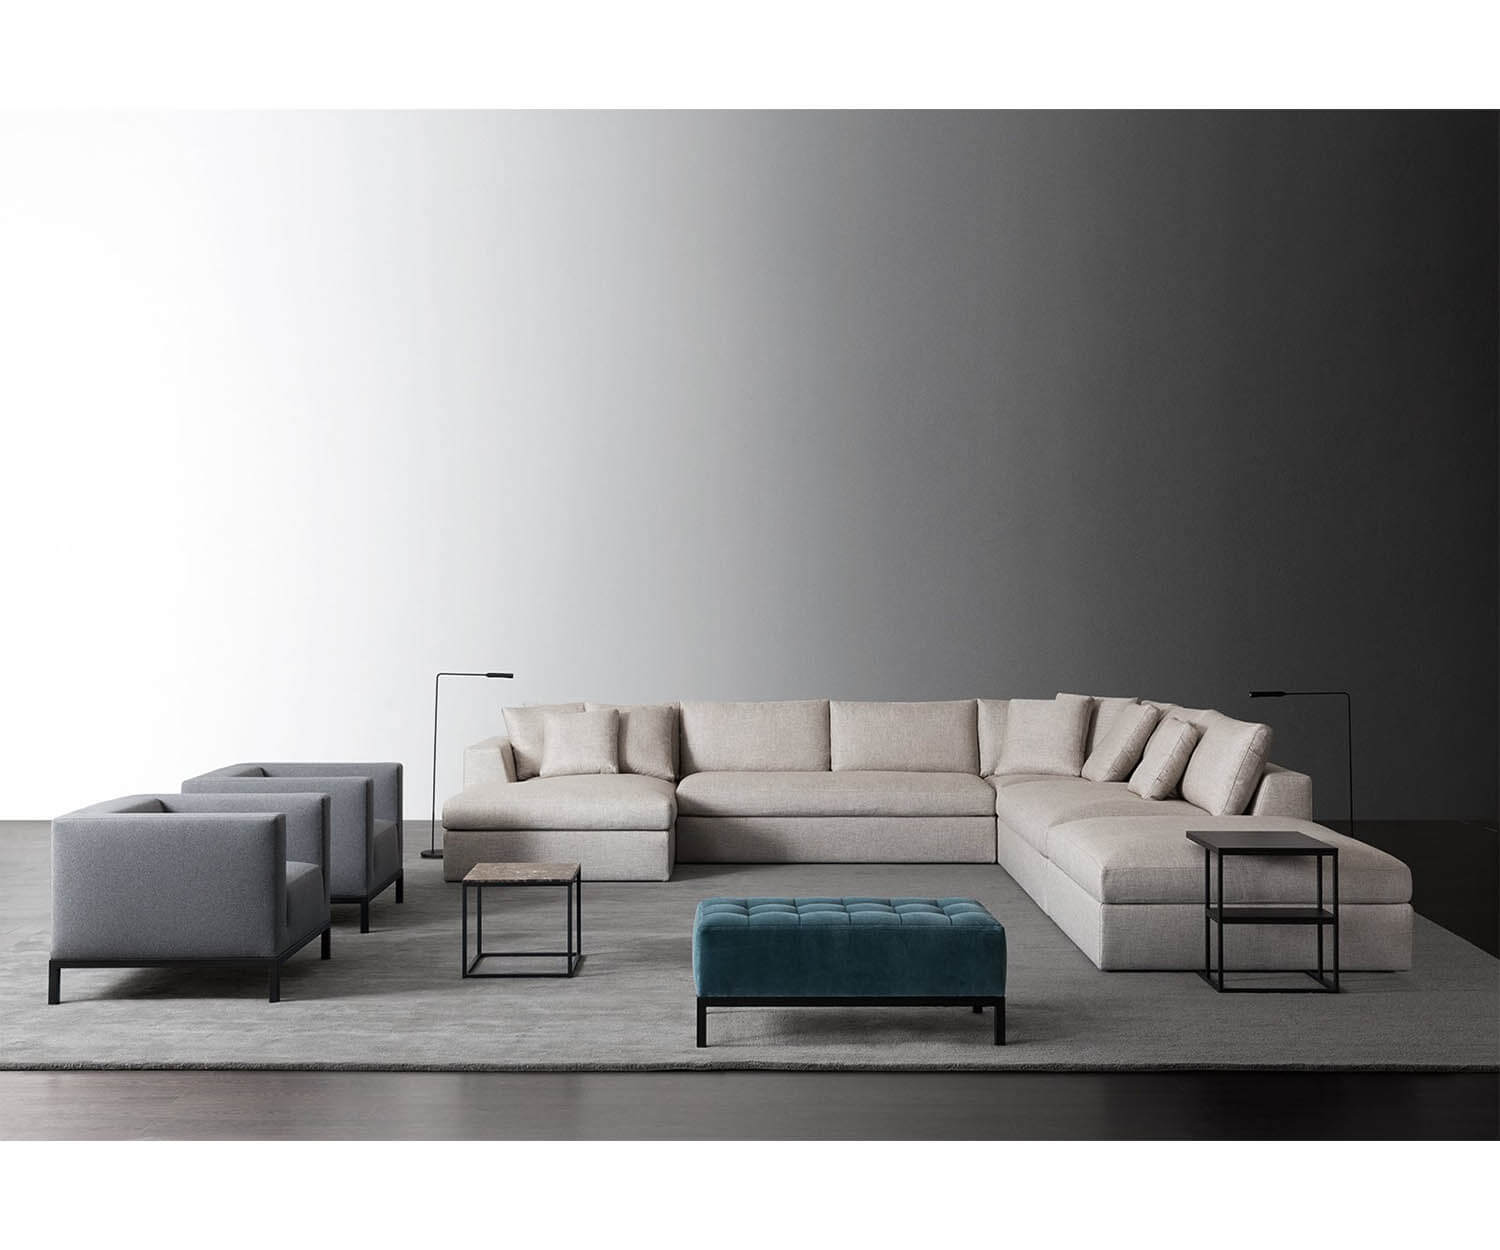 Louis Small Modular Sofa I Meridiani I Casa Design Group